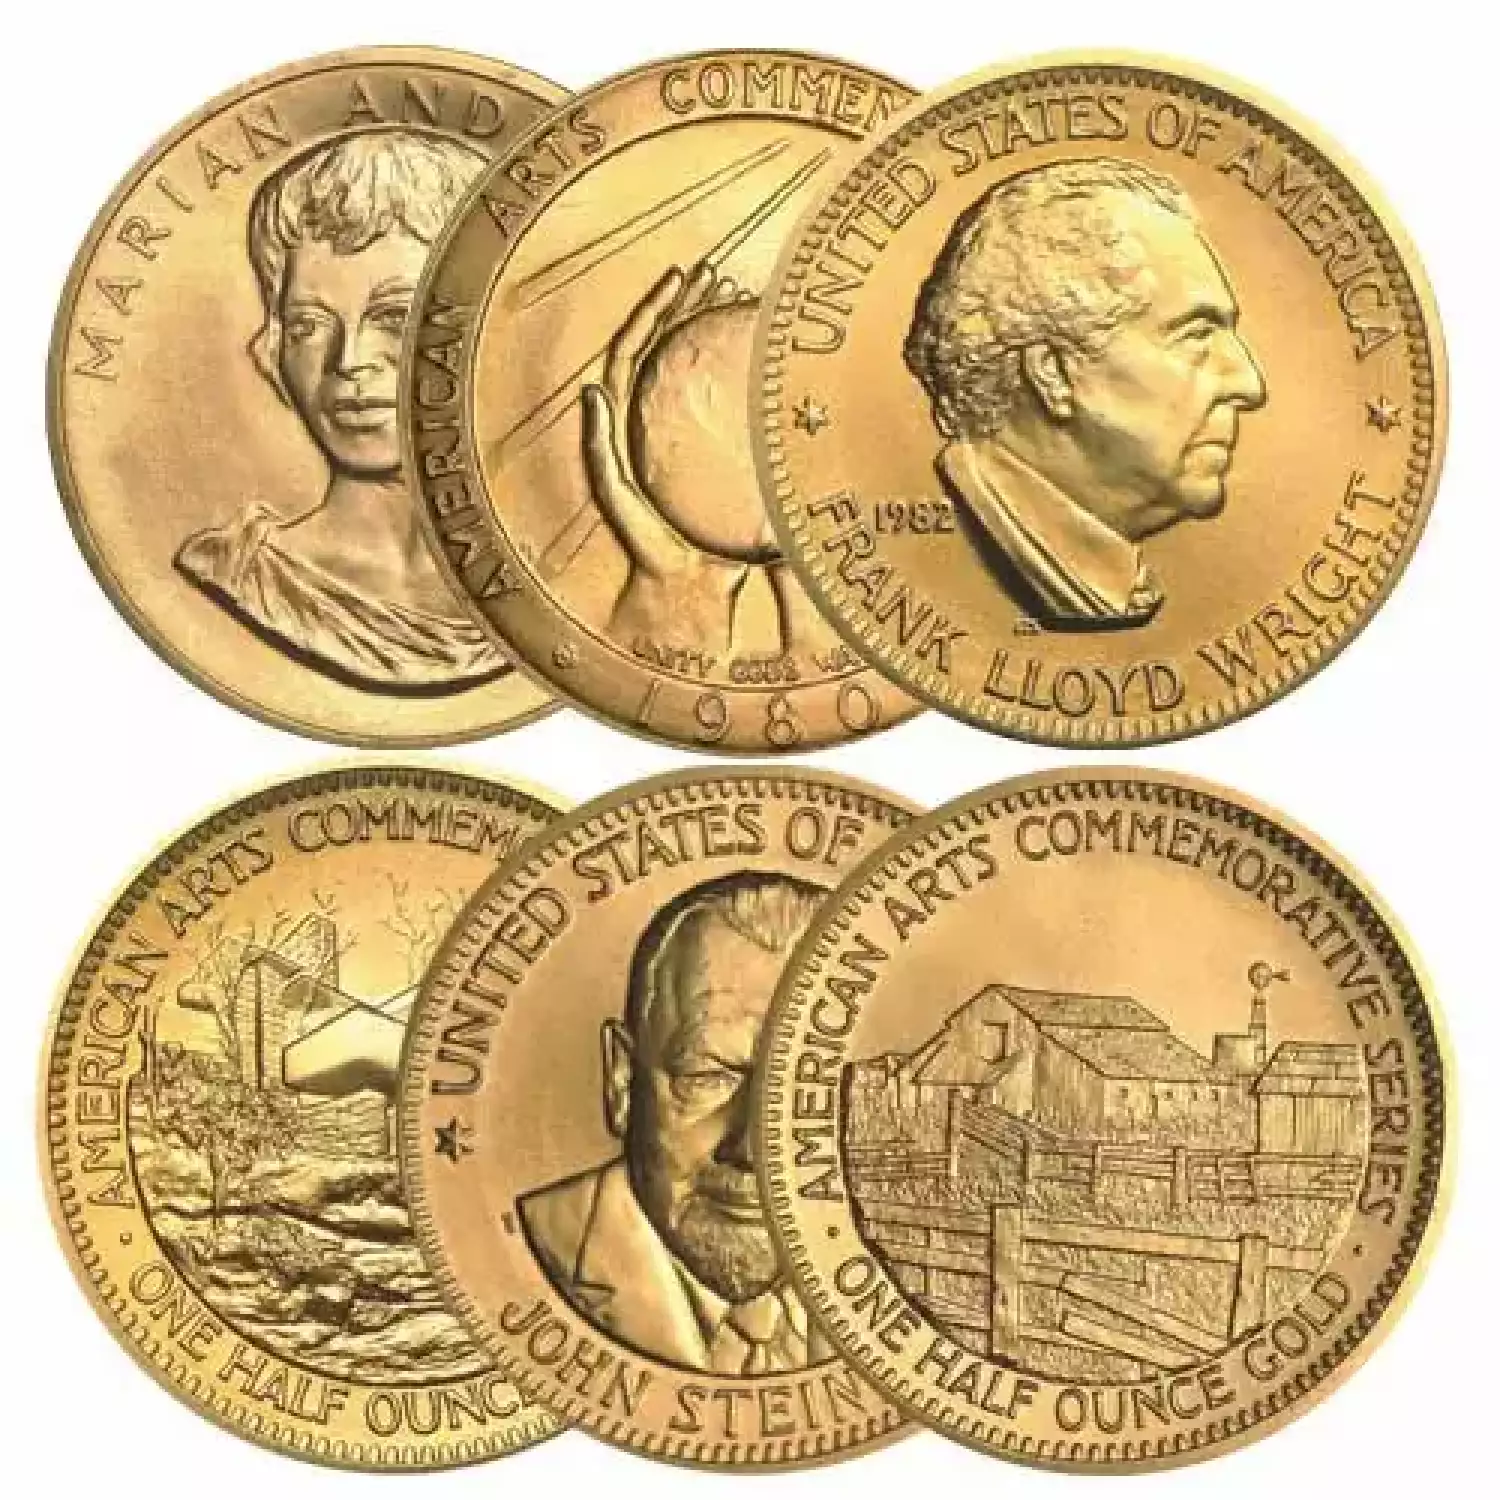 1/2 oz US Mint Commemorative Arts Gold Medal (Random) (1)